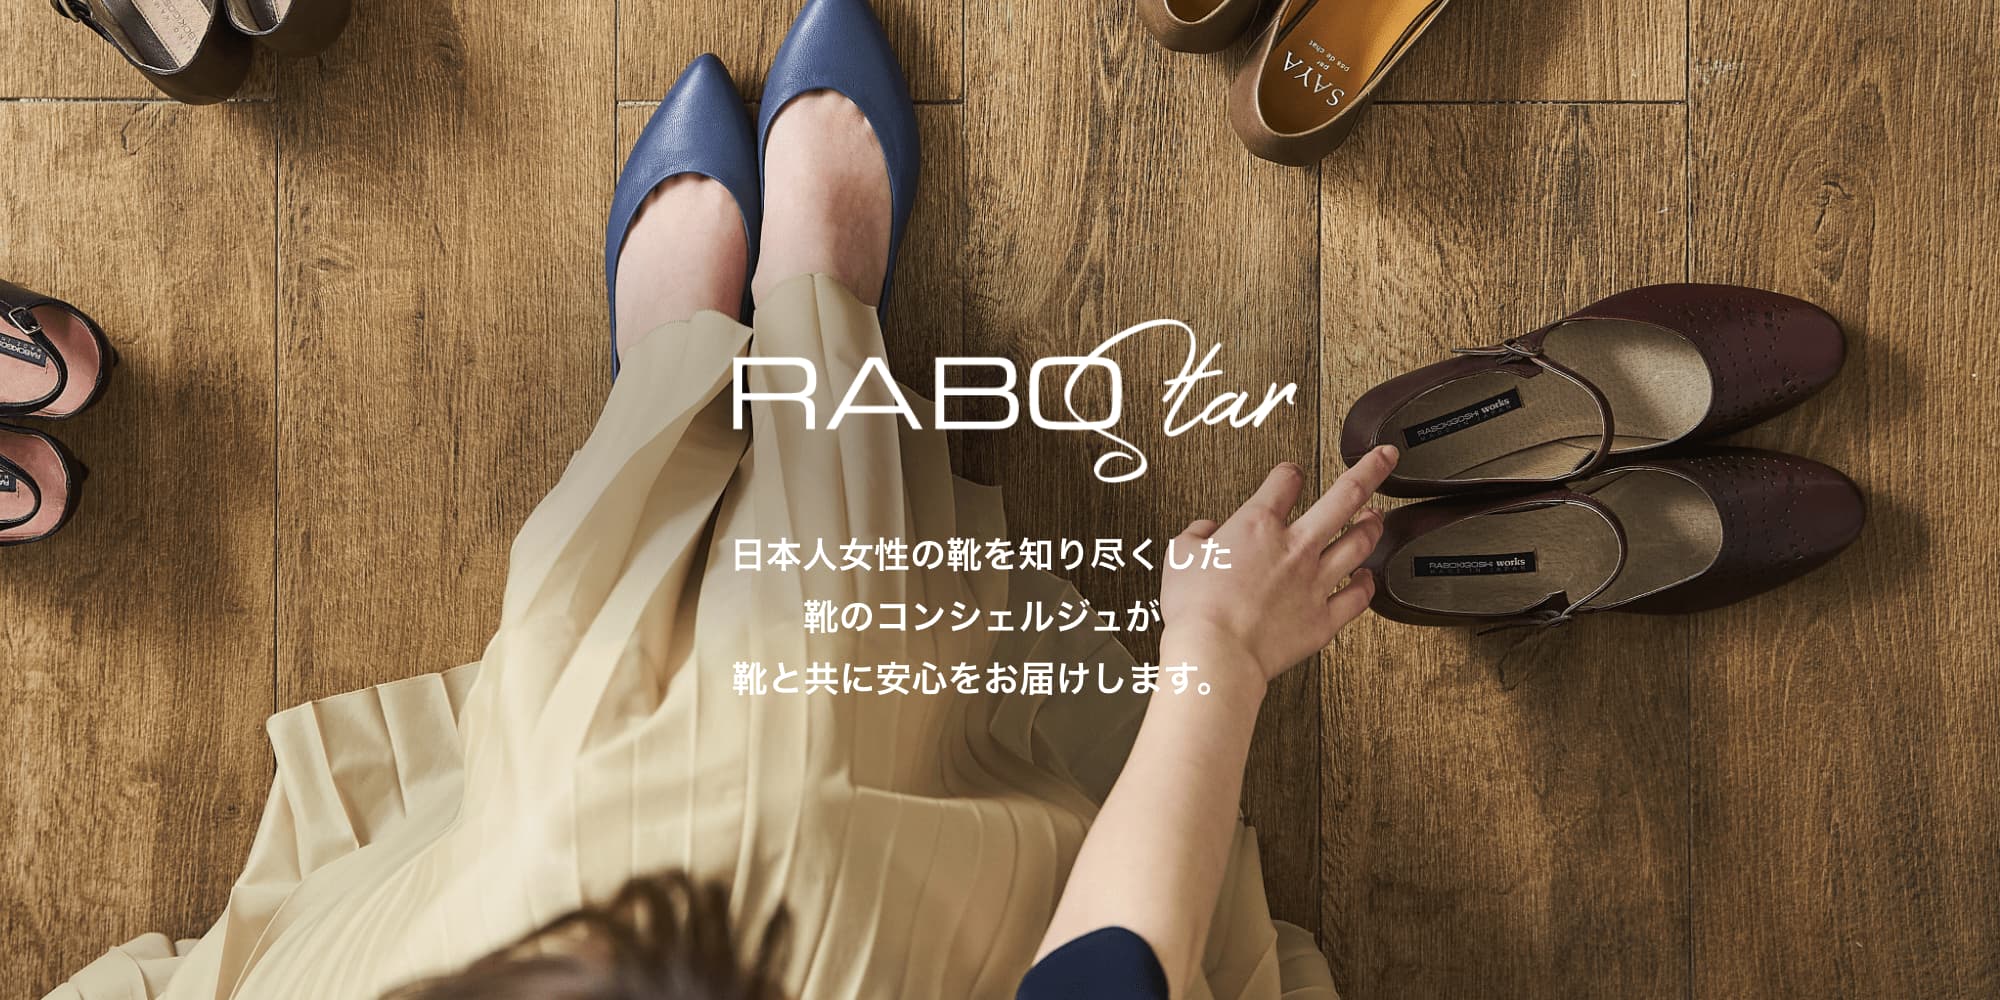 RABO Star 日本人女性の靴を知り尽くした靴のコンシェルジュが靴と共に安心をお届けします。